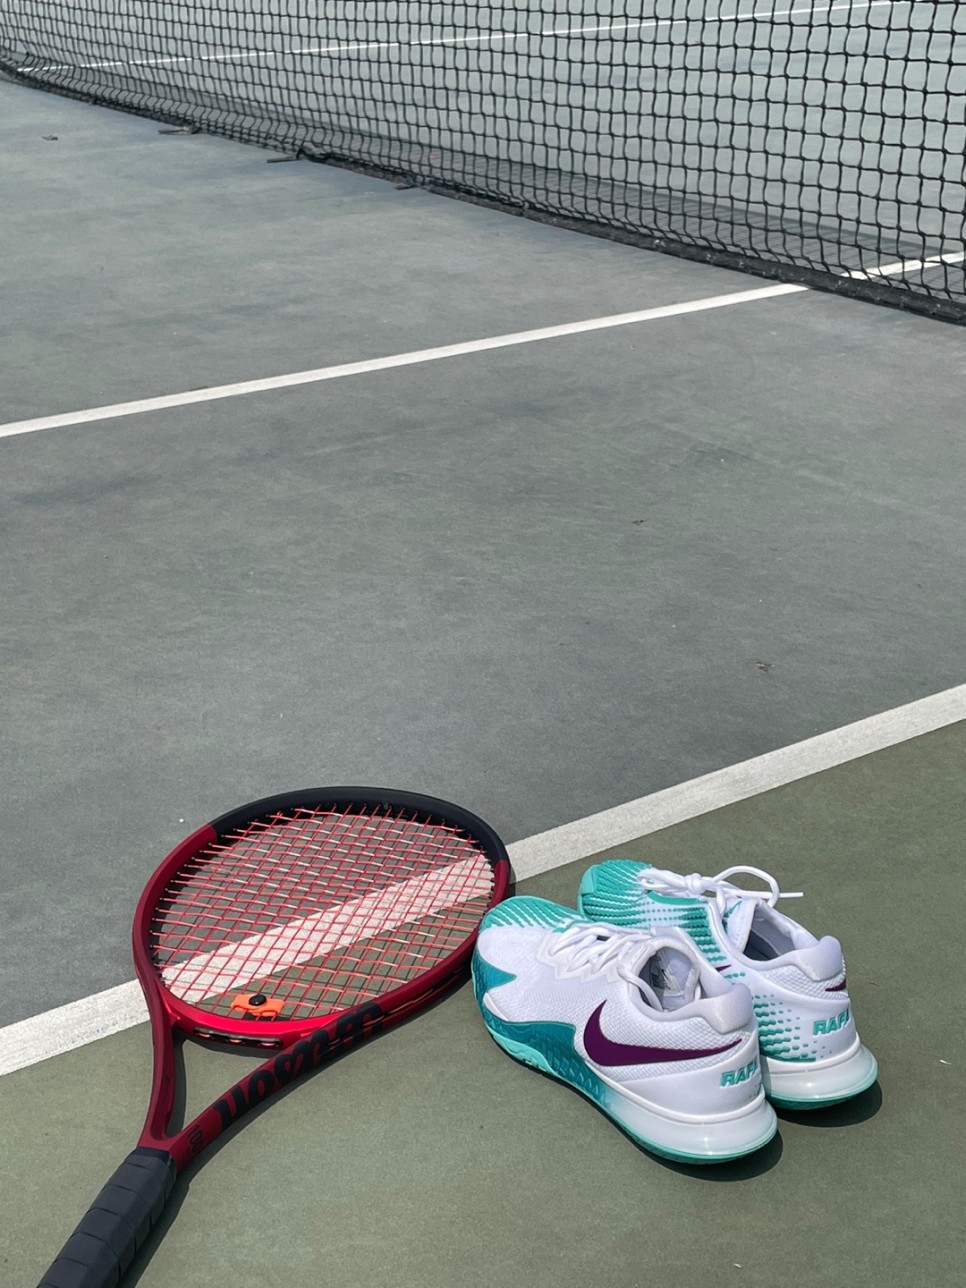 테니스 가방 브랜드 윌슨, 나이키 테니스화 장비 추천 :)